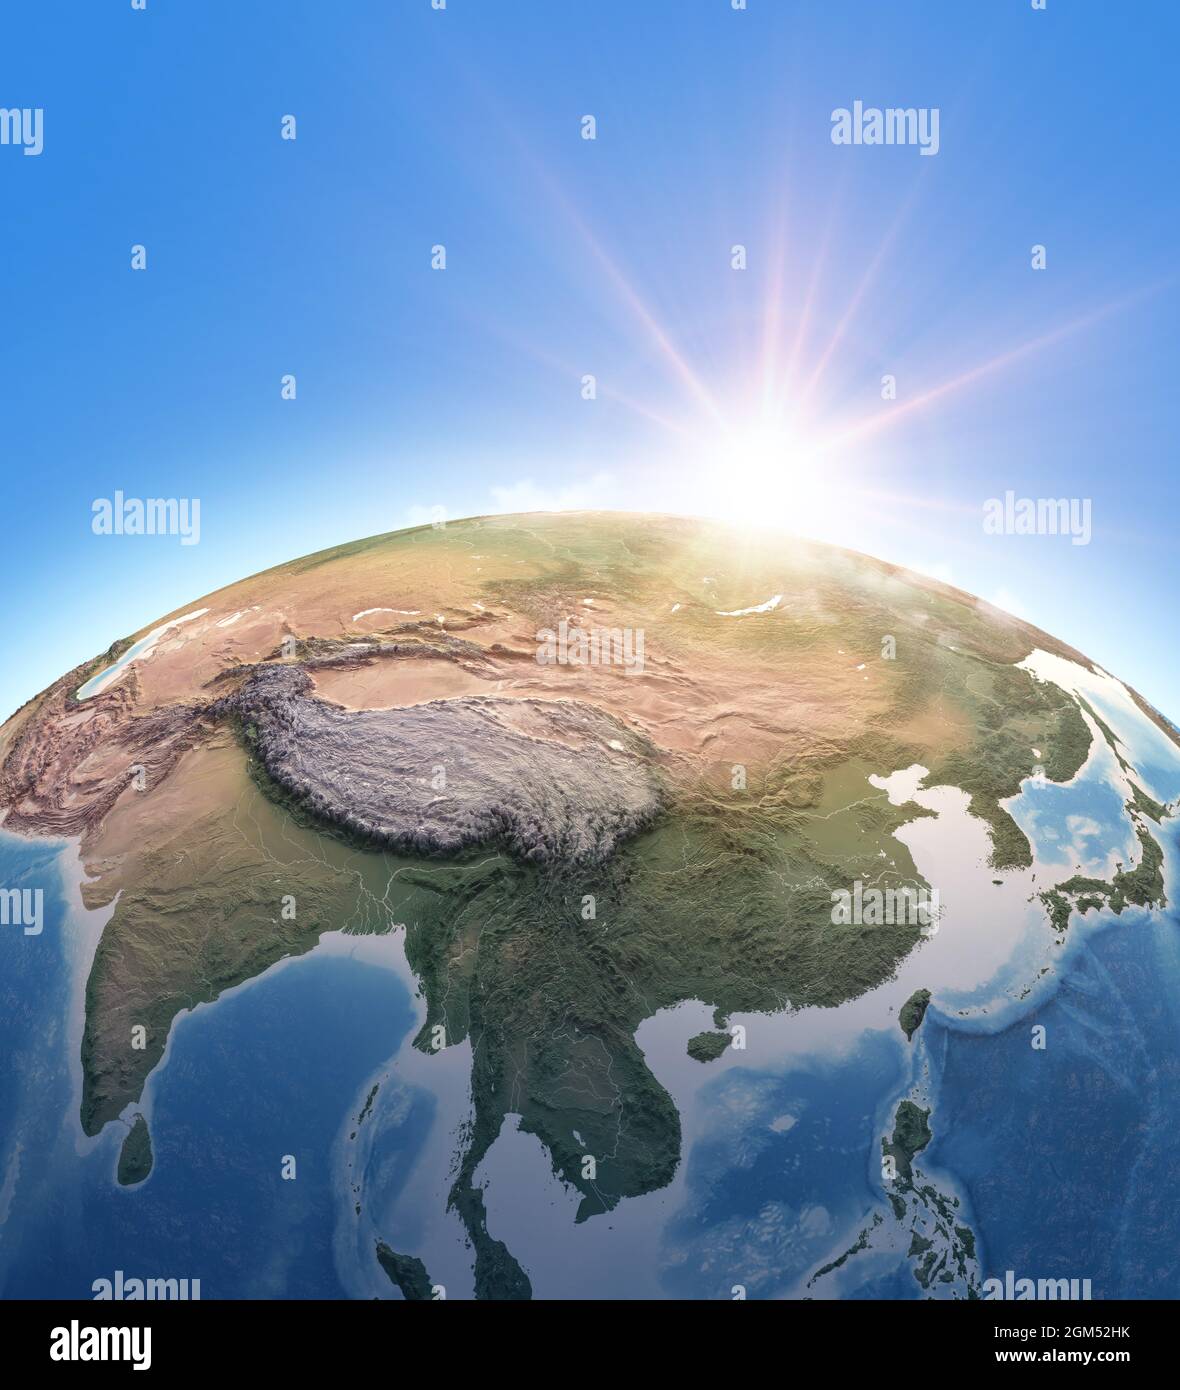 Sonne scheint über dem Planeten Erde. Physische Karte von Südostasien, China, der Mongolei und dem Himalaya. Elemente dieses Bildes, die von der NASA eingerichtet wurden Stockfoto